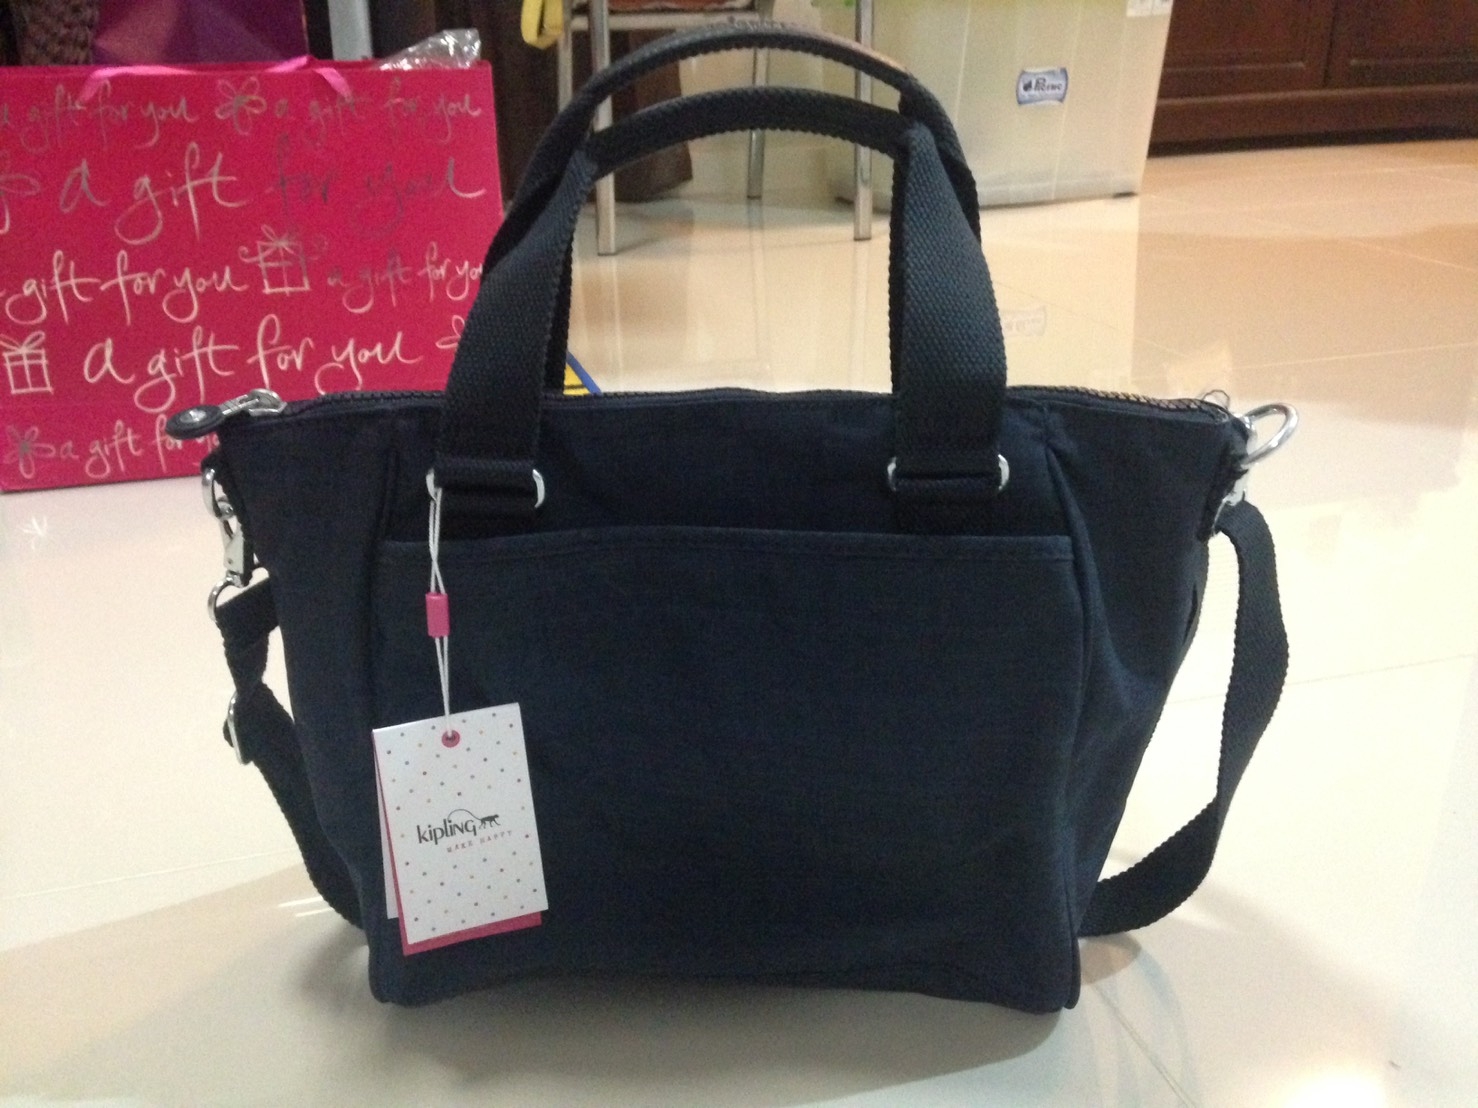 ราคา 3,200 บาท ยี่ห้อ Kipling Amiel BP สี Dazz True Blue Size Medium Handbag สภาพ มือ 1 ของเบลเยี่ยม (มีเเล้วใบนึง เเม่ซื้อมาให้ซ้ำ)